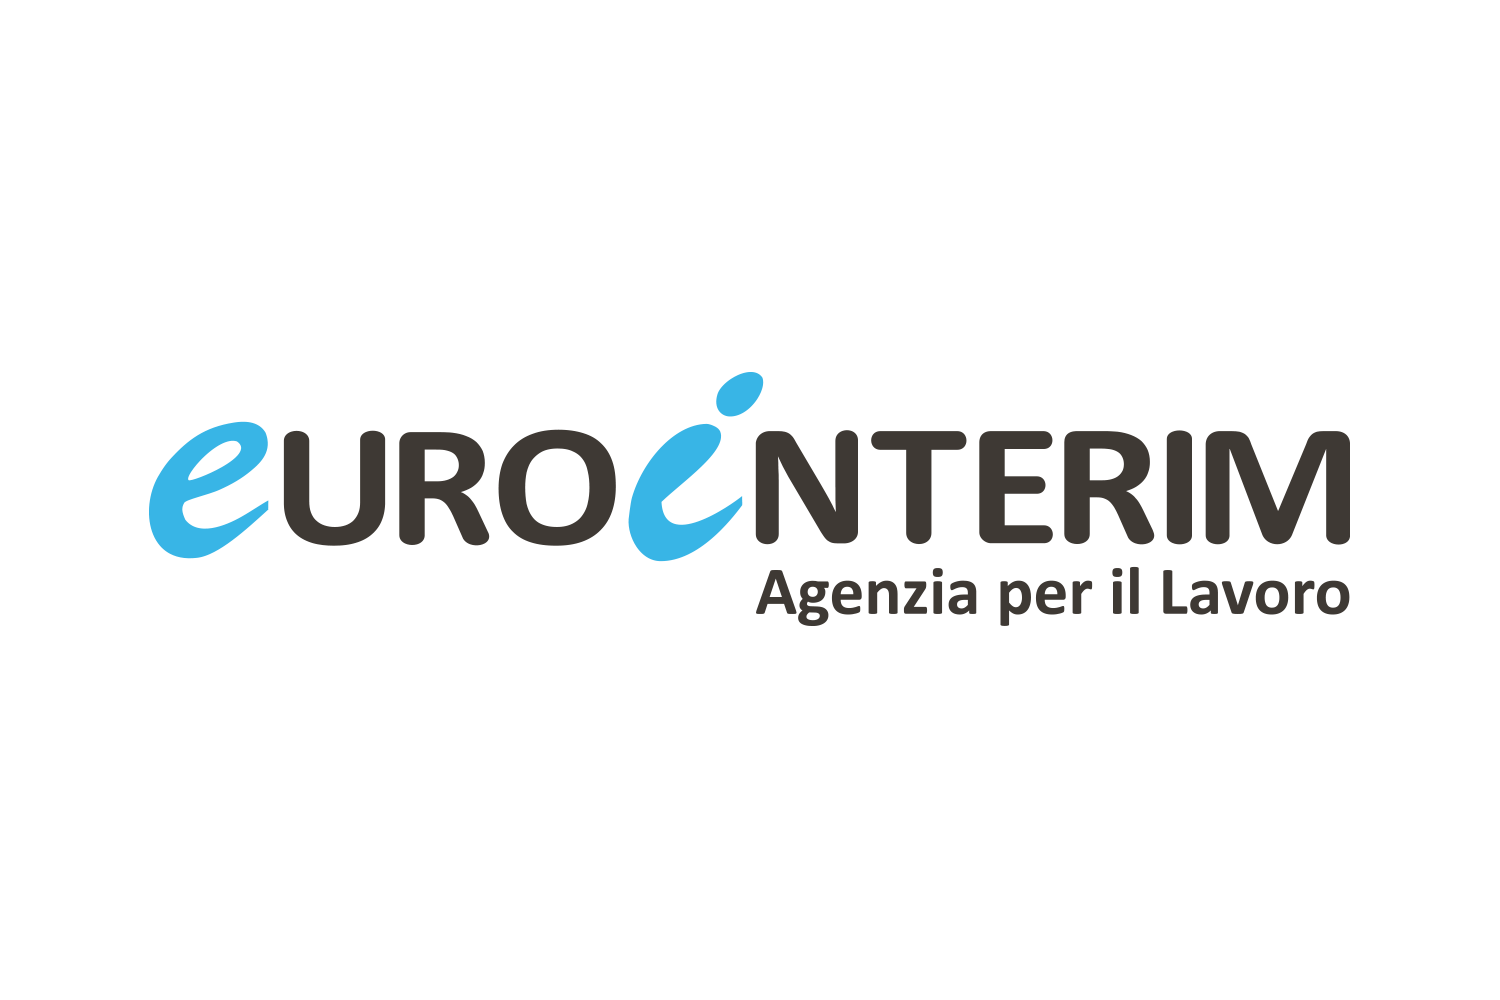 EuroInterim - Agenzia per il lavoro